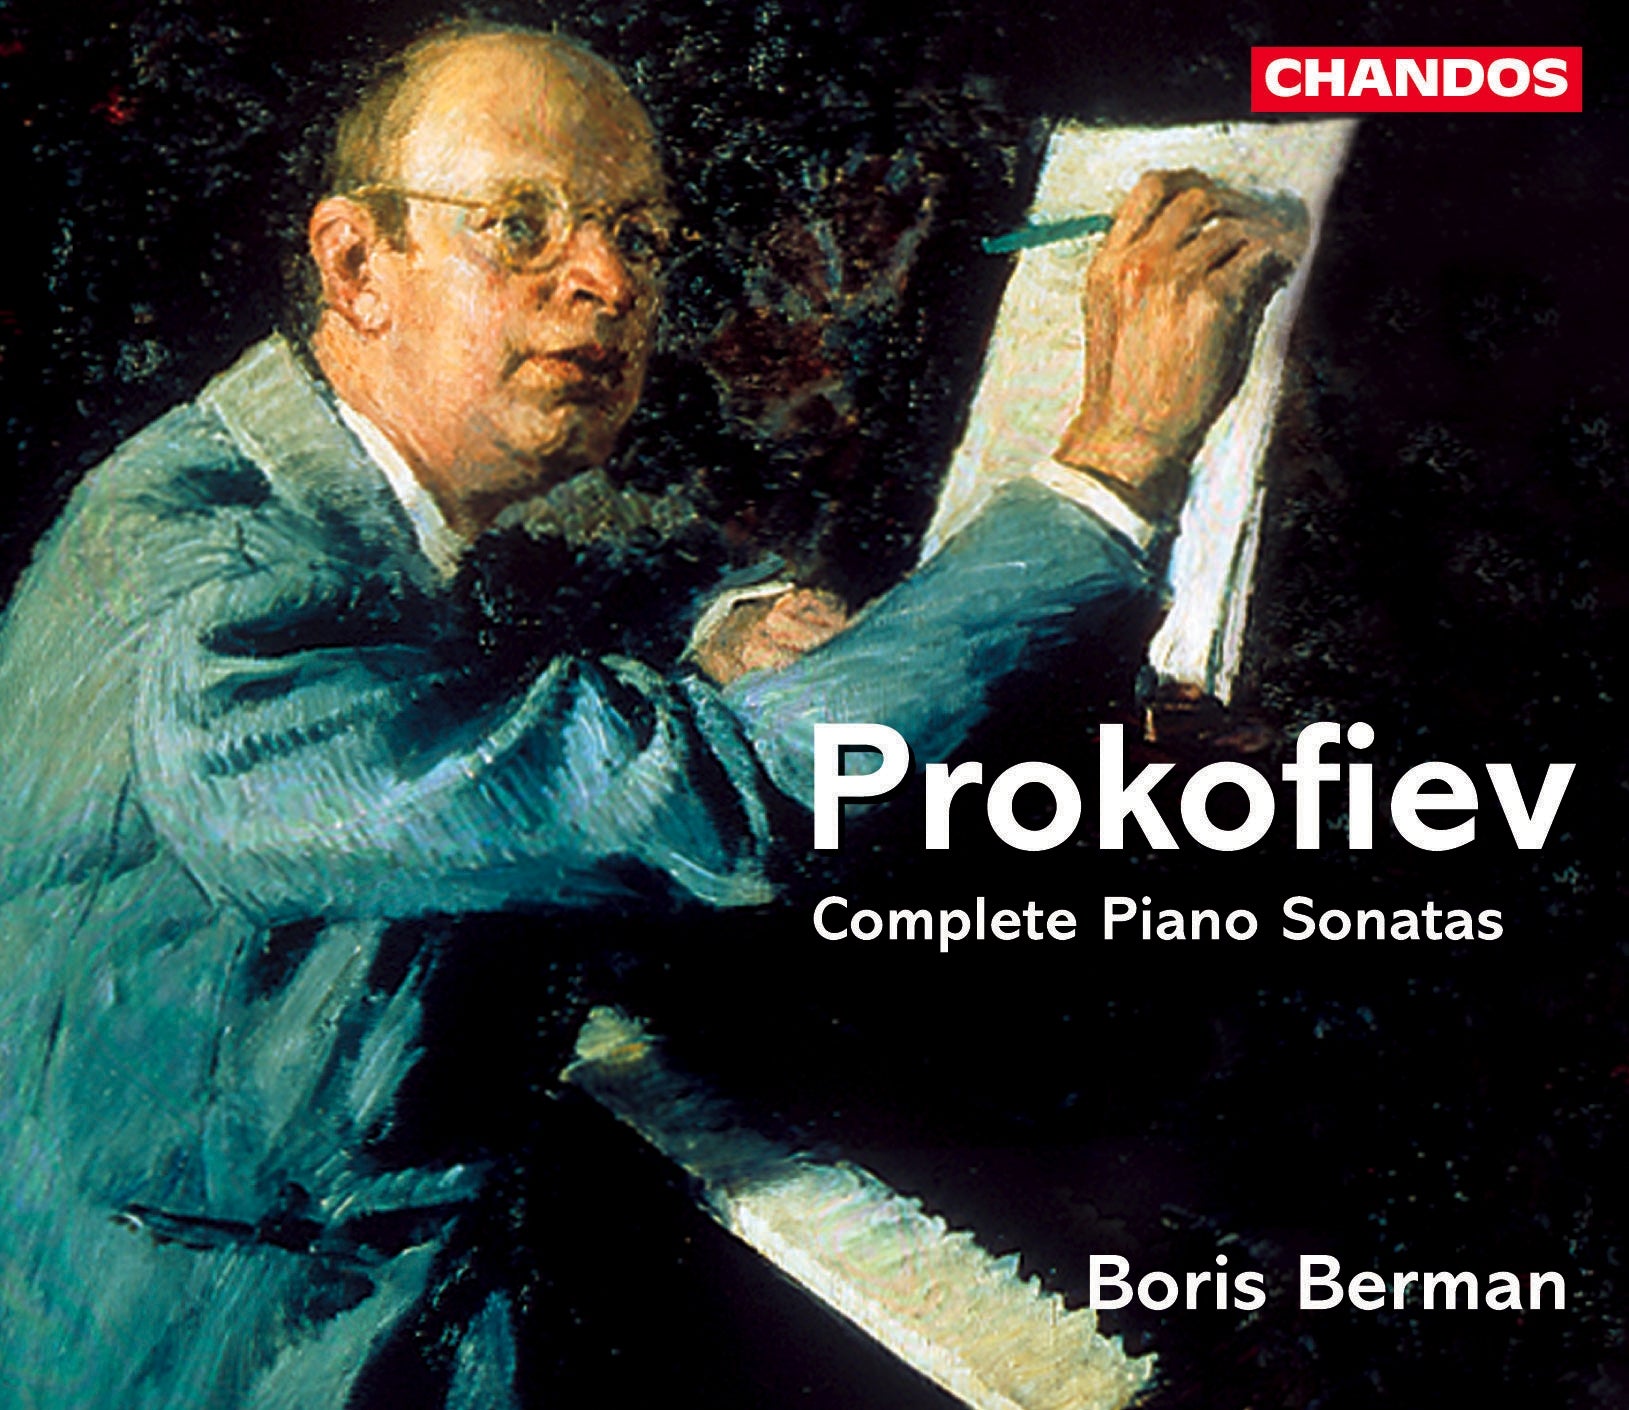 Prokofiev: Complete Piano Sonatas / Boris Berman